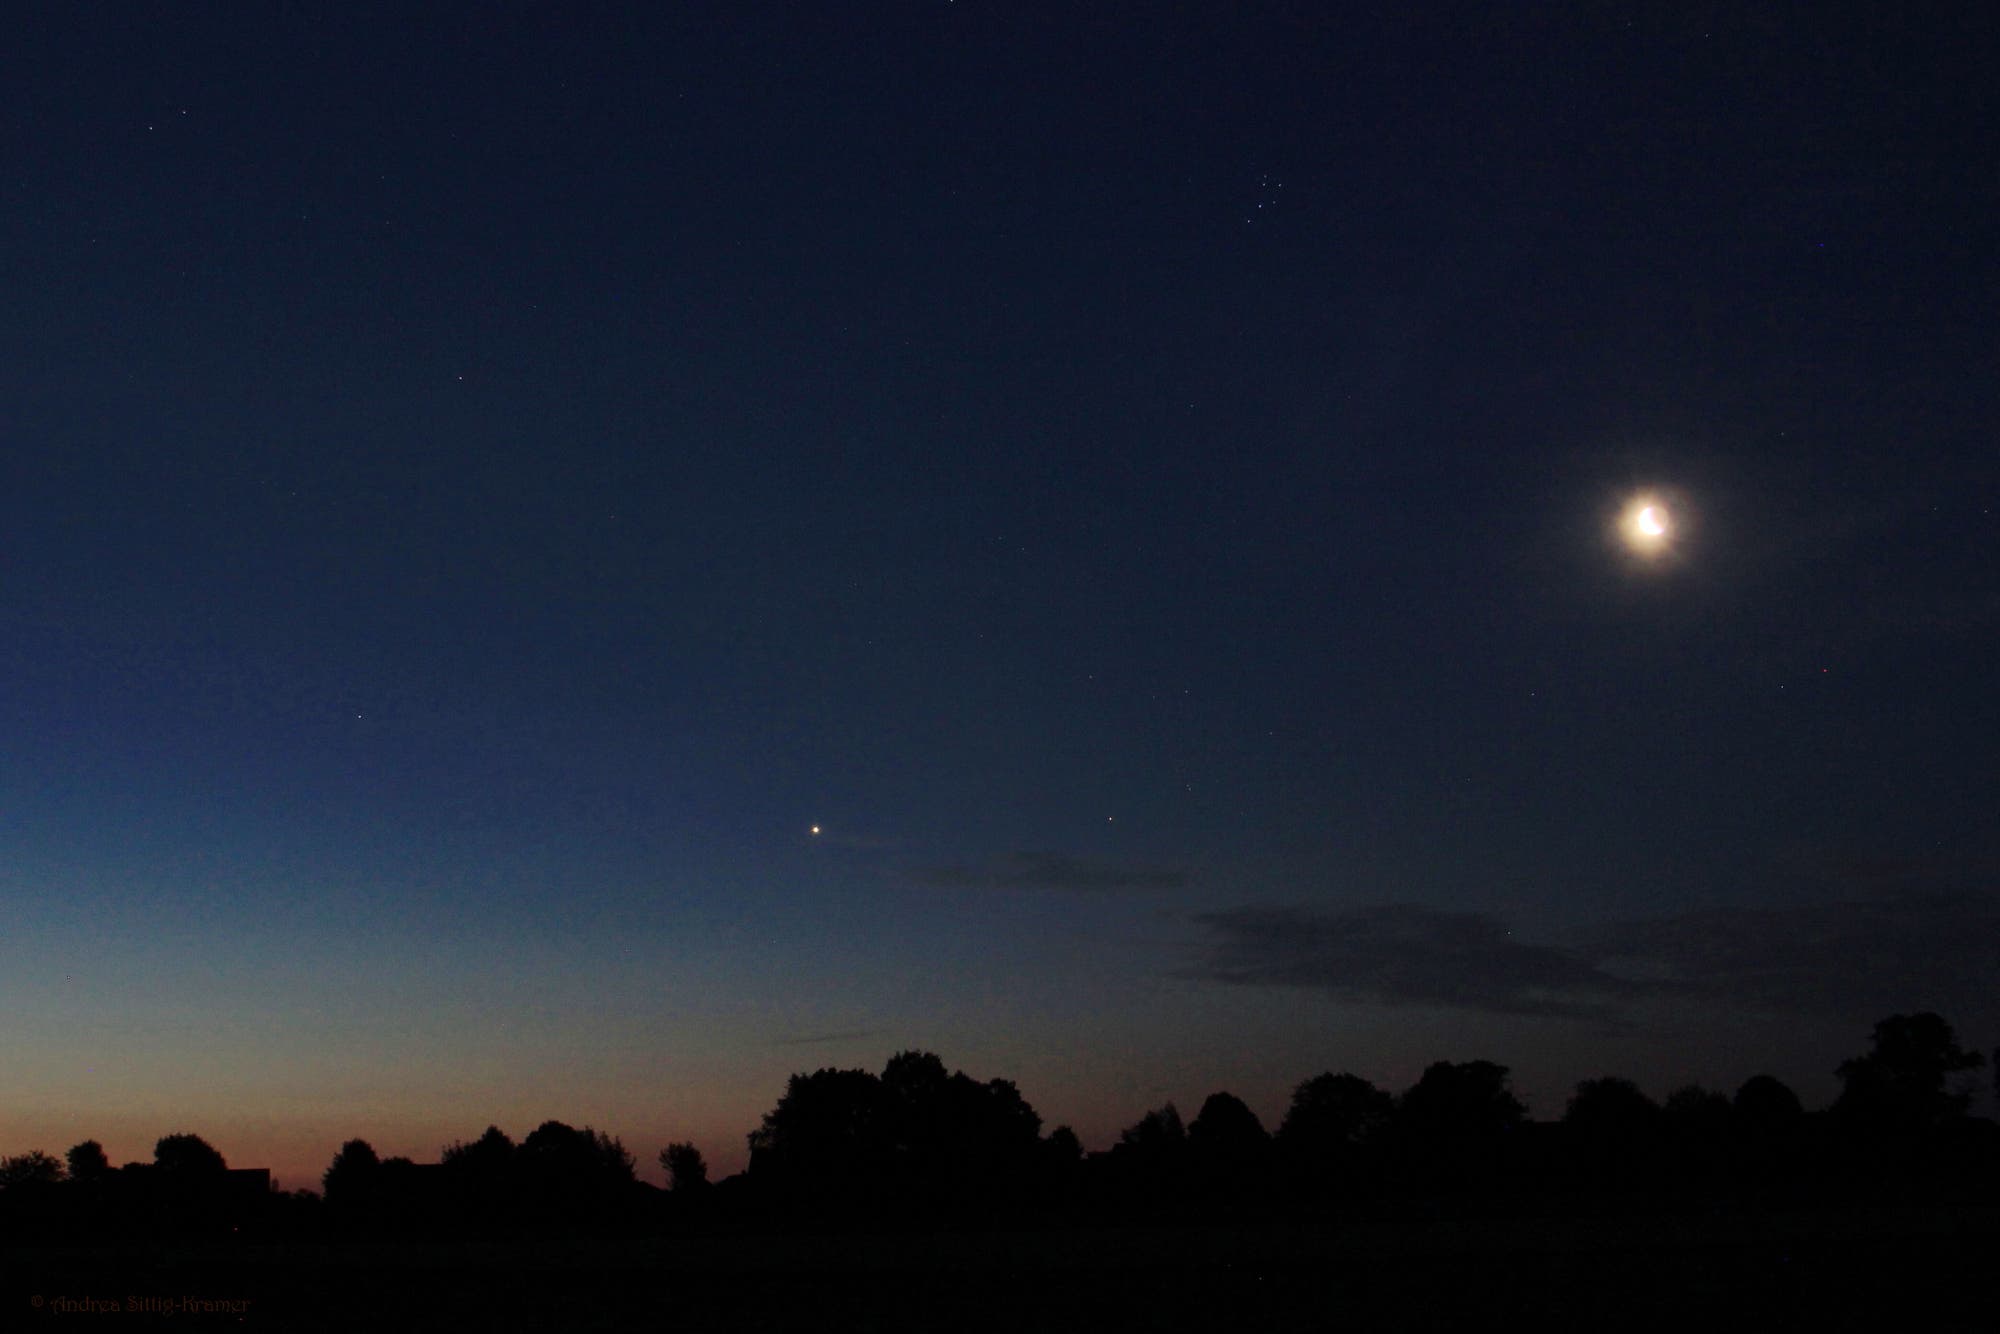 Venus-Aledebaran-Mond am Morgen über Uelzen 